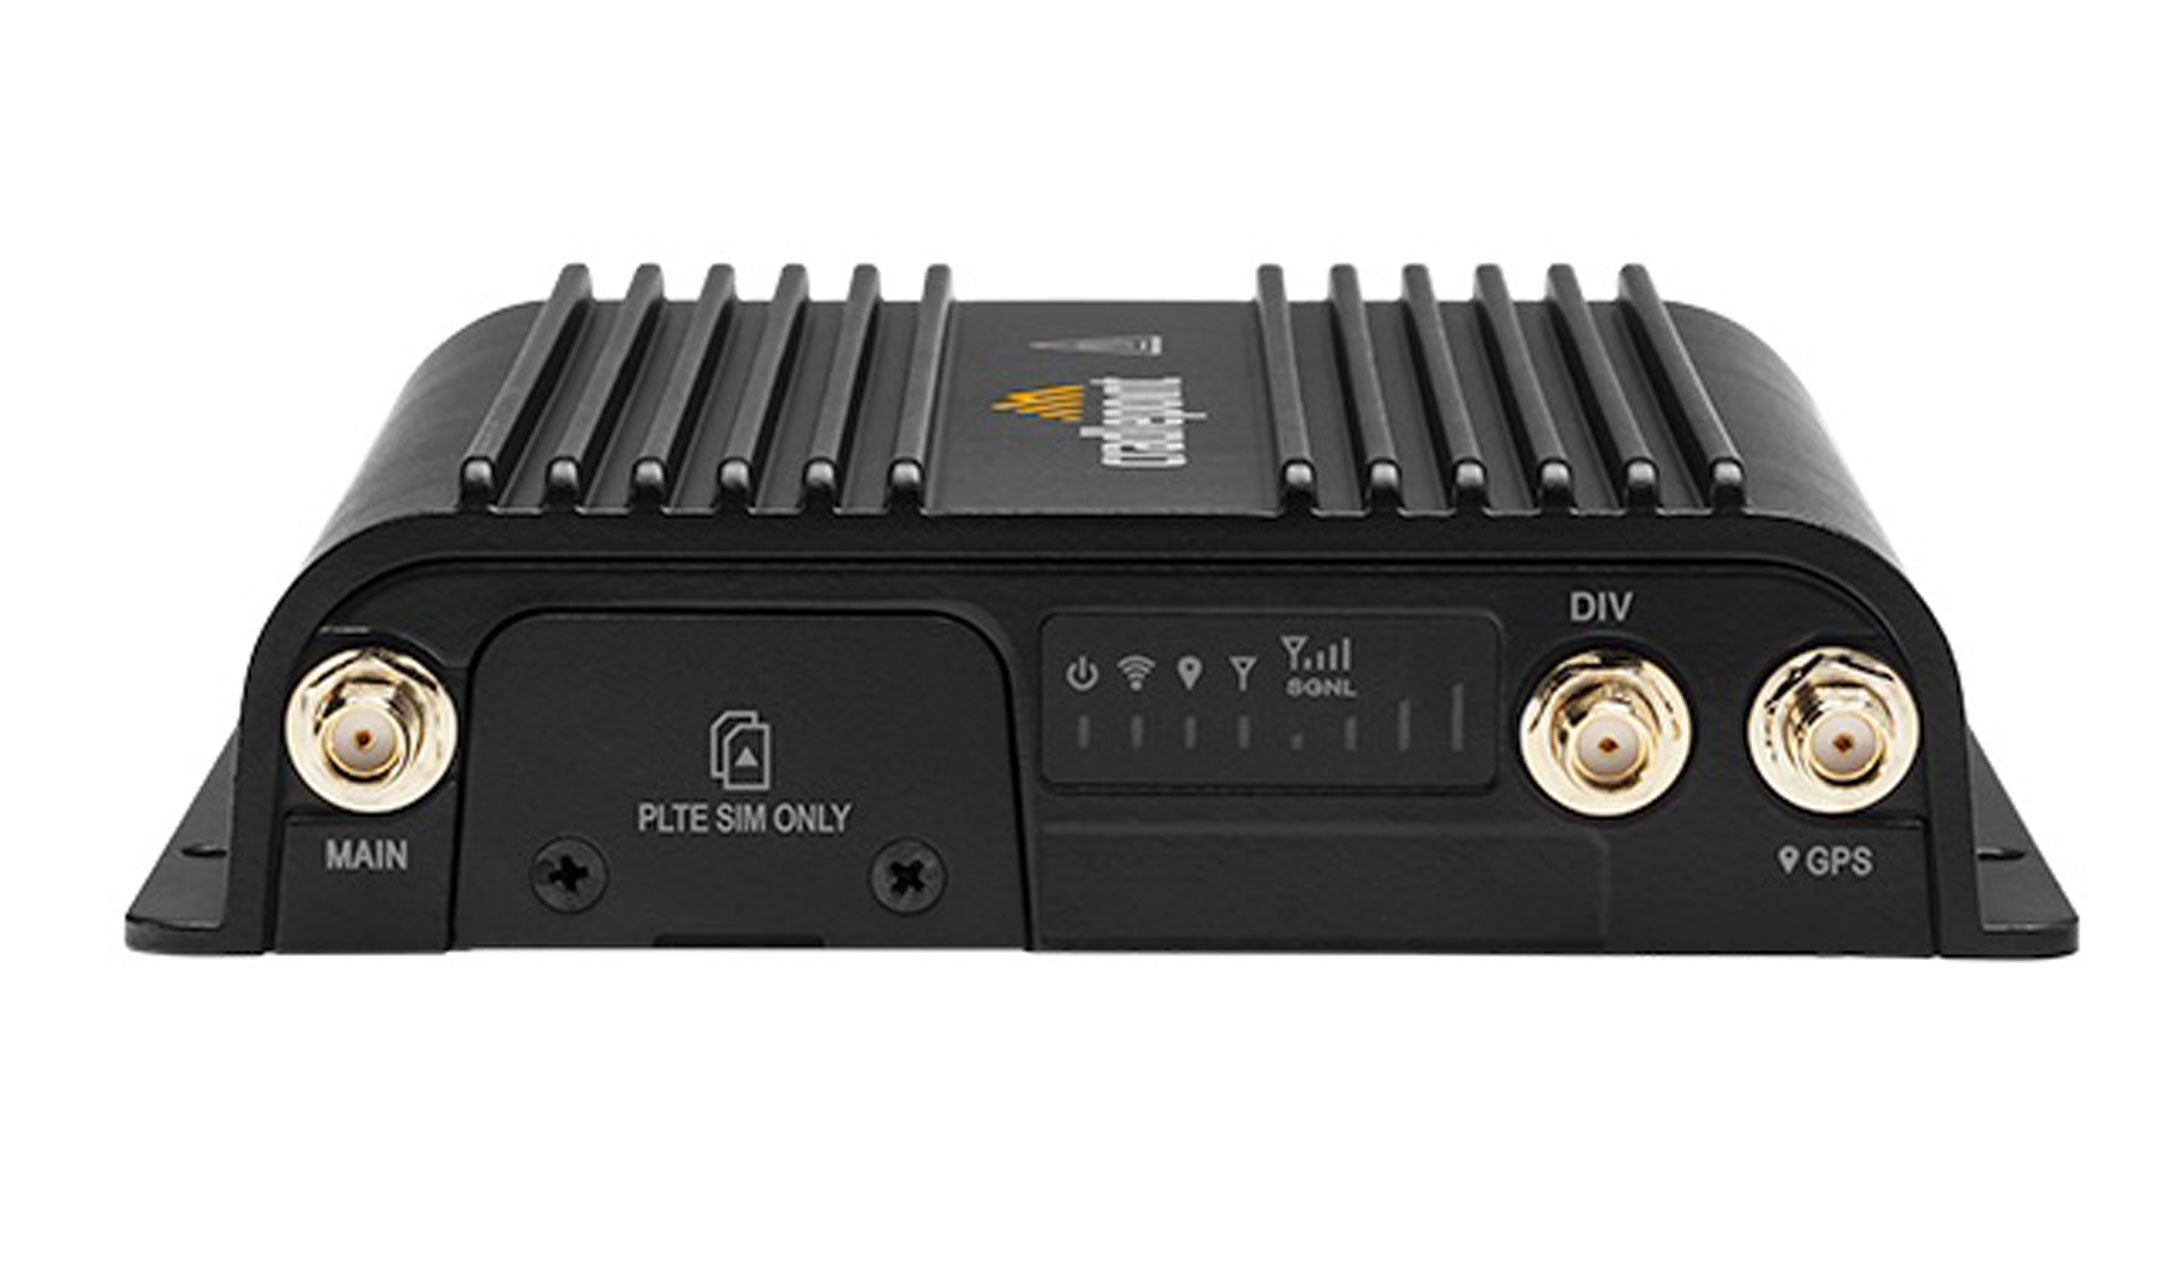 Routeur Cradlepoint R500 avec Wi-Fi (modem 300 Mbps) avec alimentation CA et antennes, Amérique du Nord 